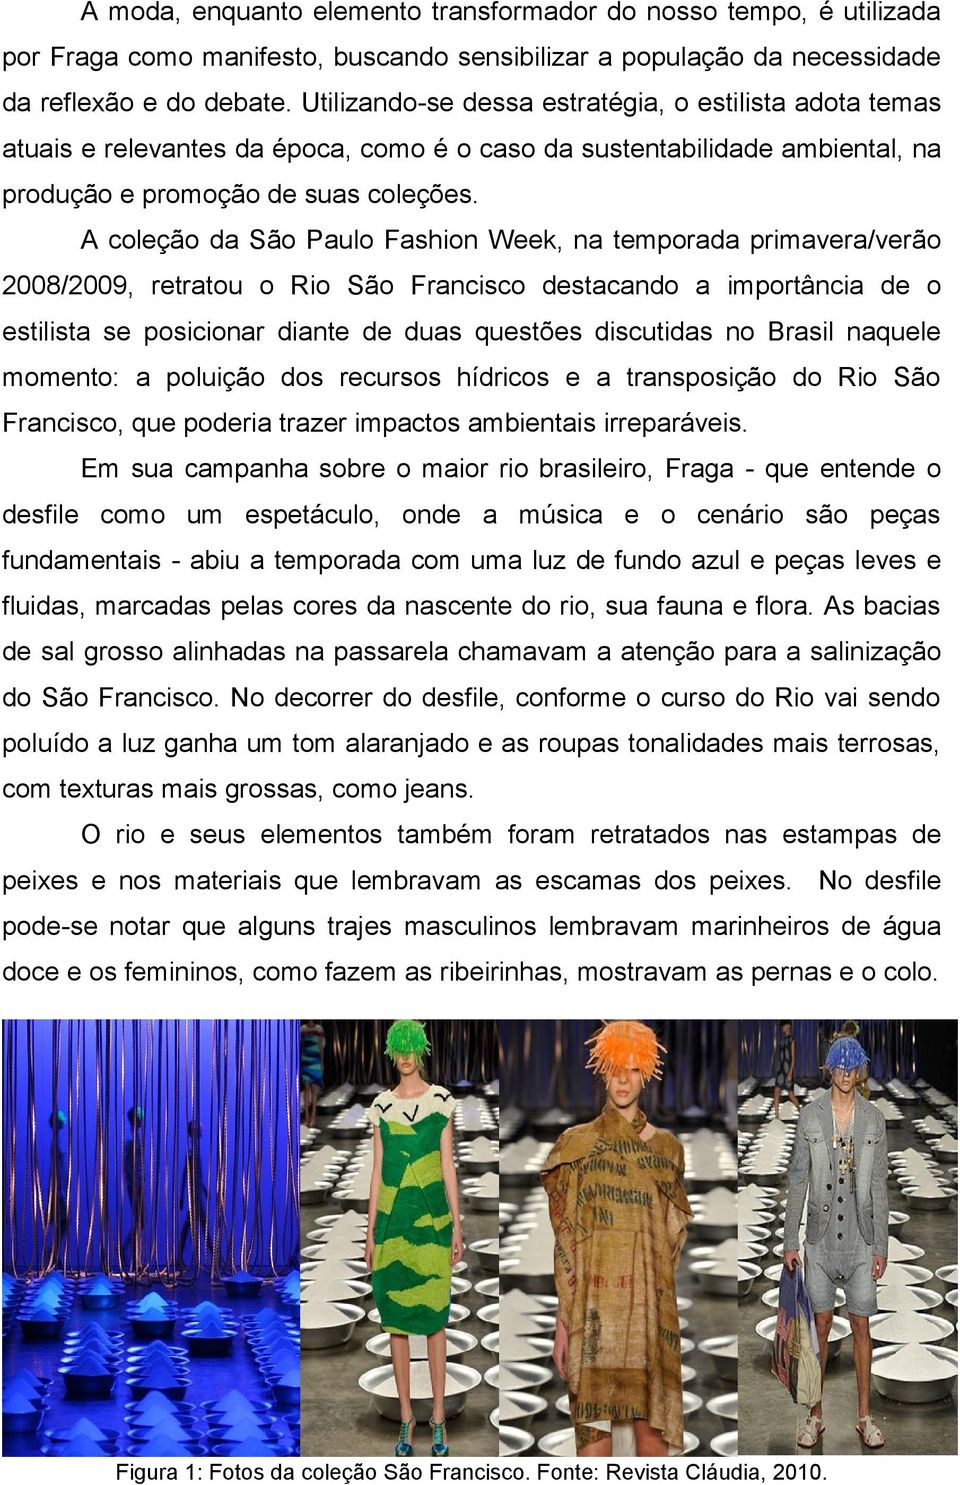 A coleção da São Paulo Fashion Week, na temporada primavera/verão 2008/2009, retratou o Rio São Francisco destacando a importância de o estilista se posicionar diante de duas questões discutidas no